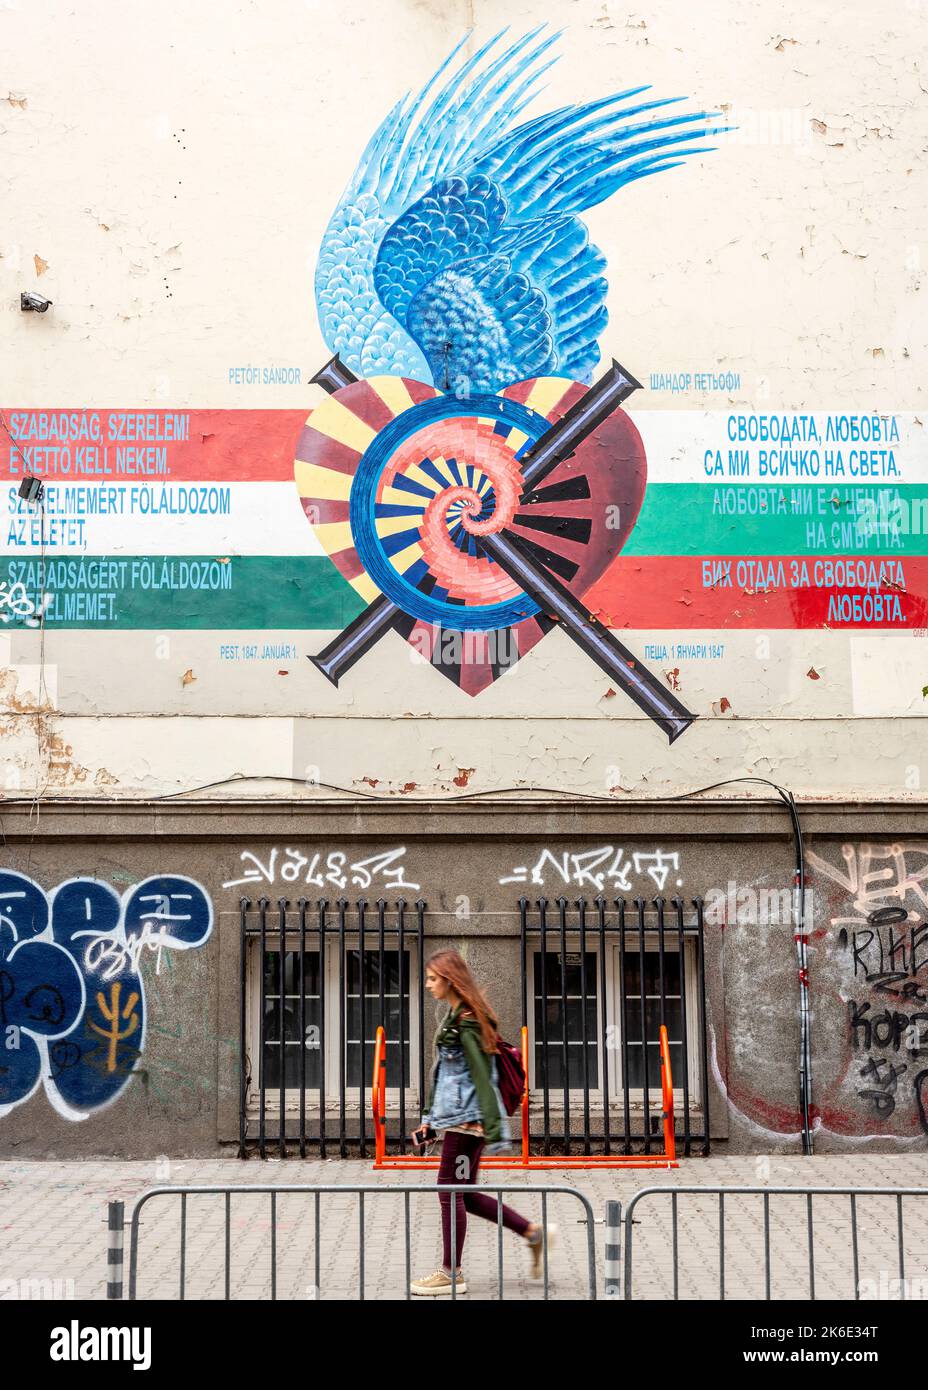 Progetto artistico di poesia da parete a parete 'Unity in Diversity' e poesia ungherese di Sándor Petőfi che presenta l'Ungheria a Sofia, Bulgaria, UE Foto Stock